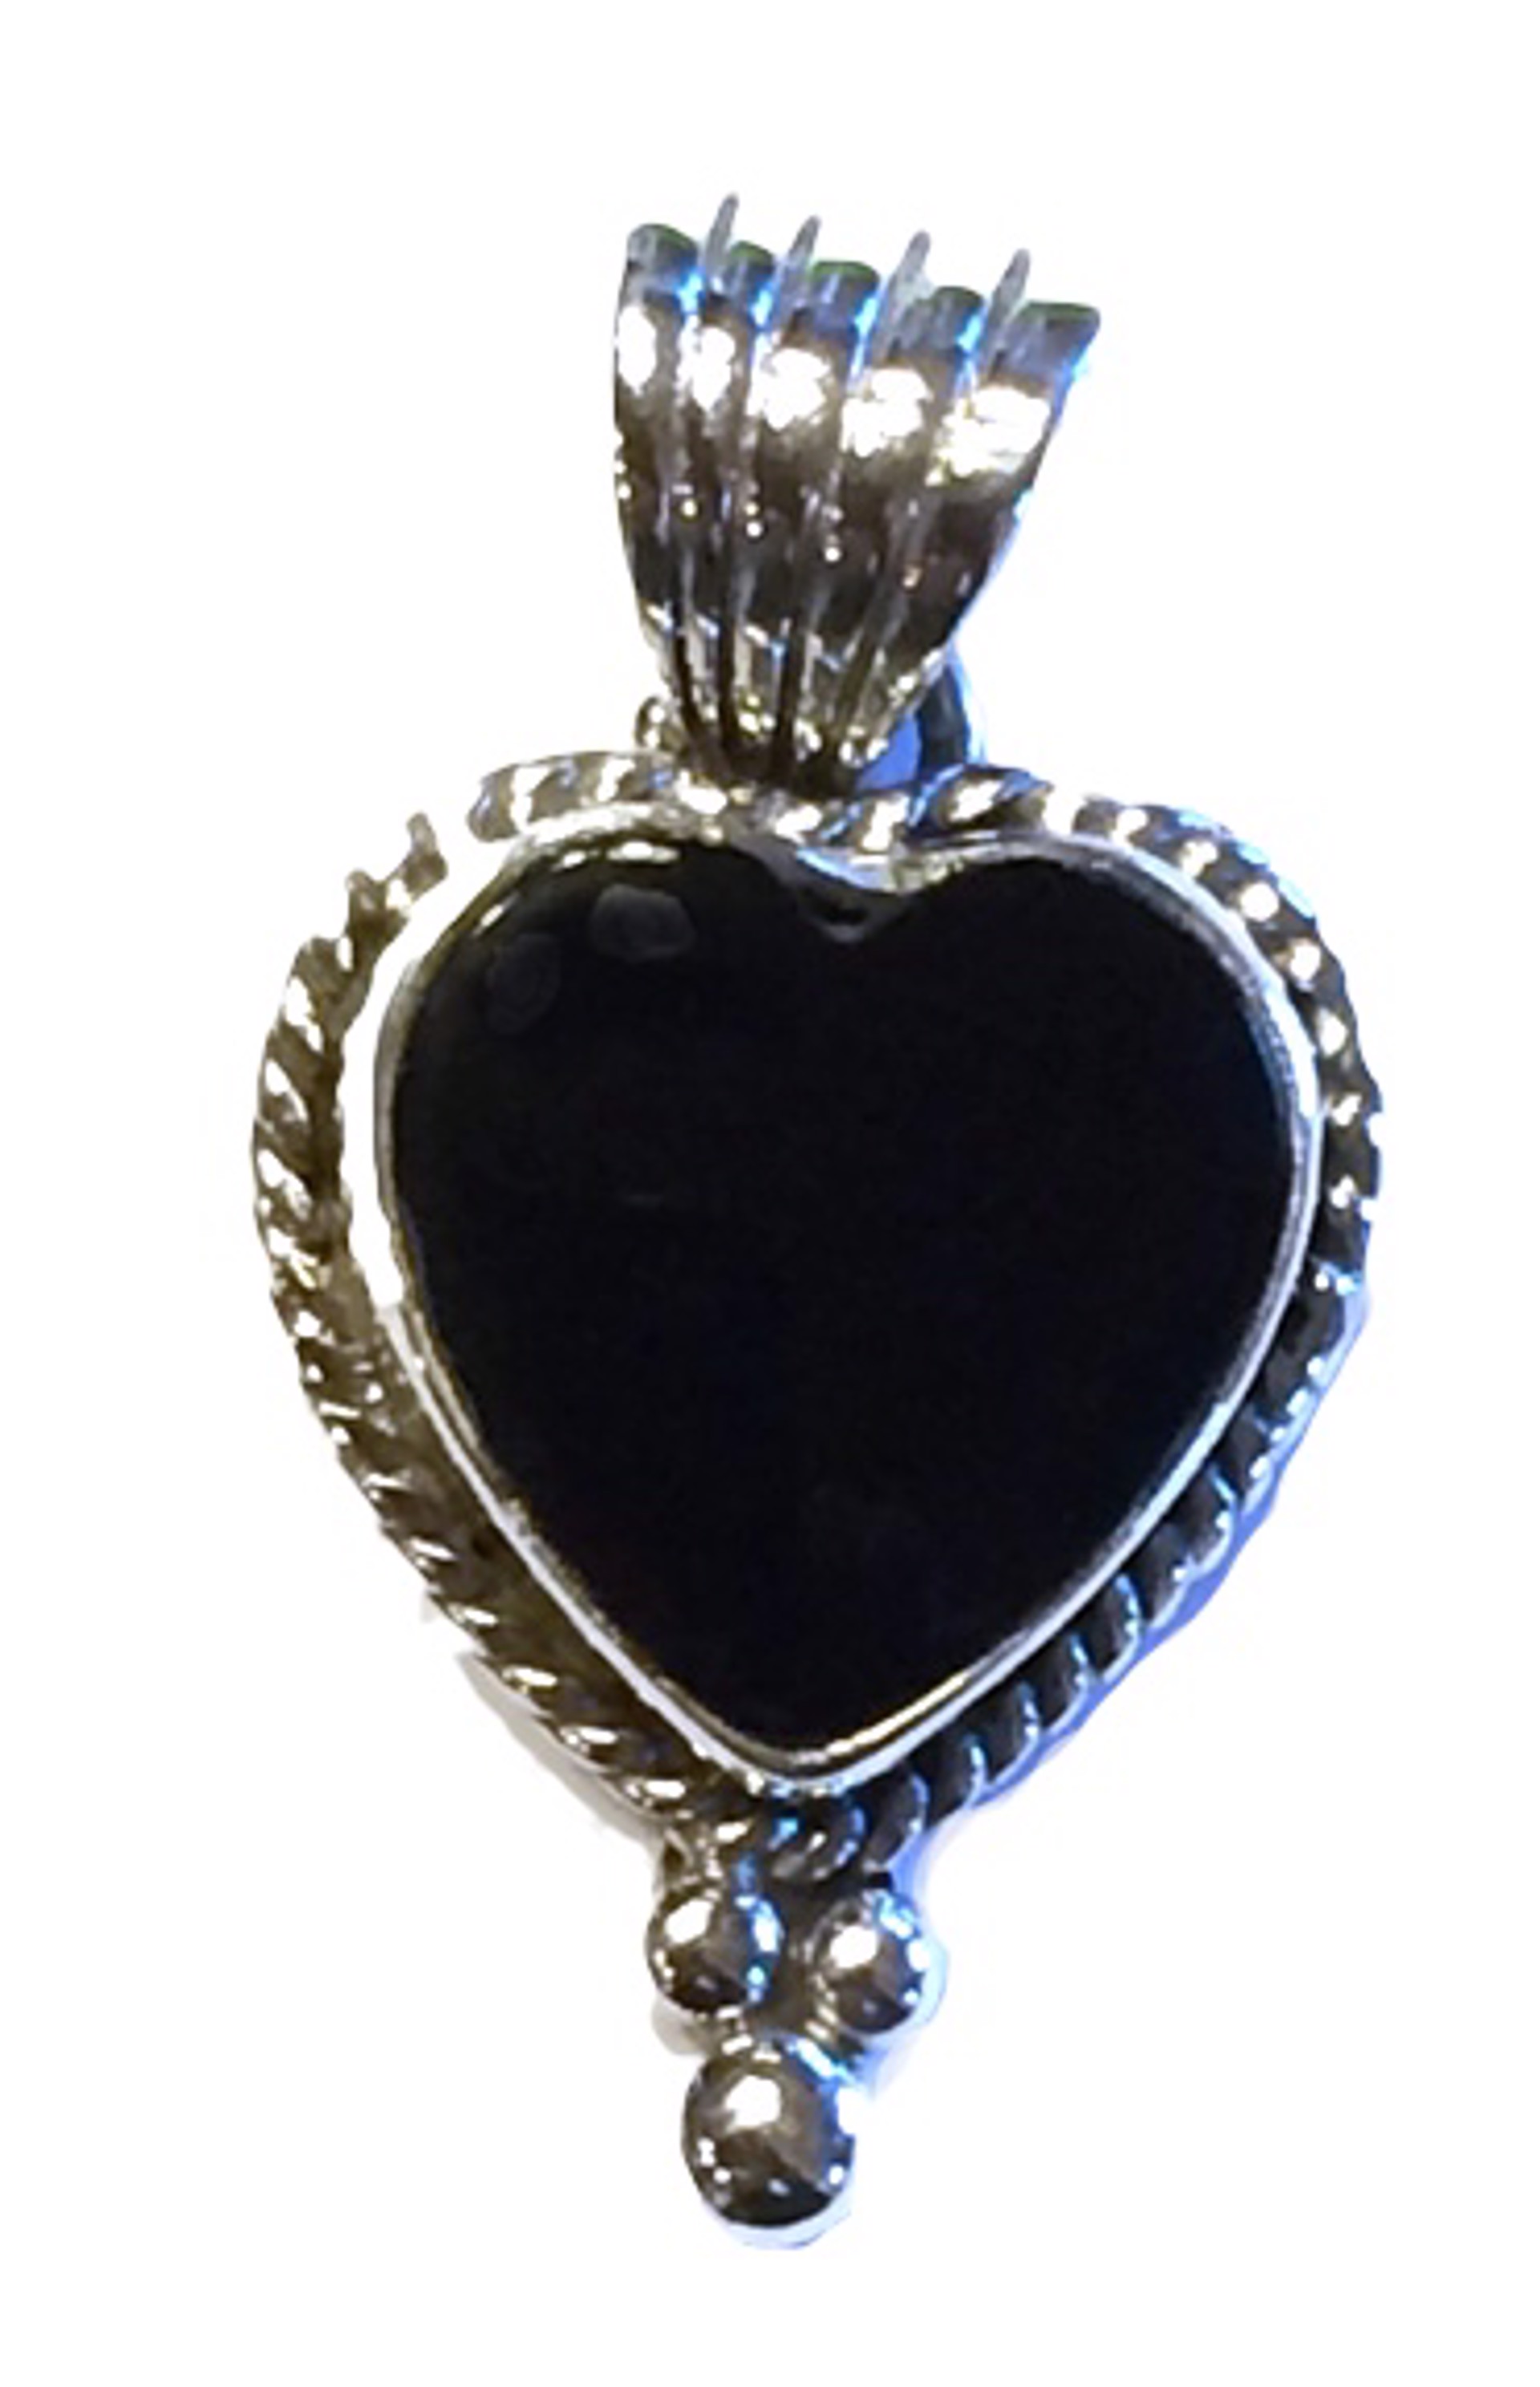 Pendant - Small Onyx Heart w/Sterling Silver by Dan Dodson